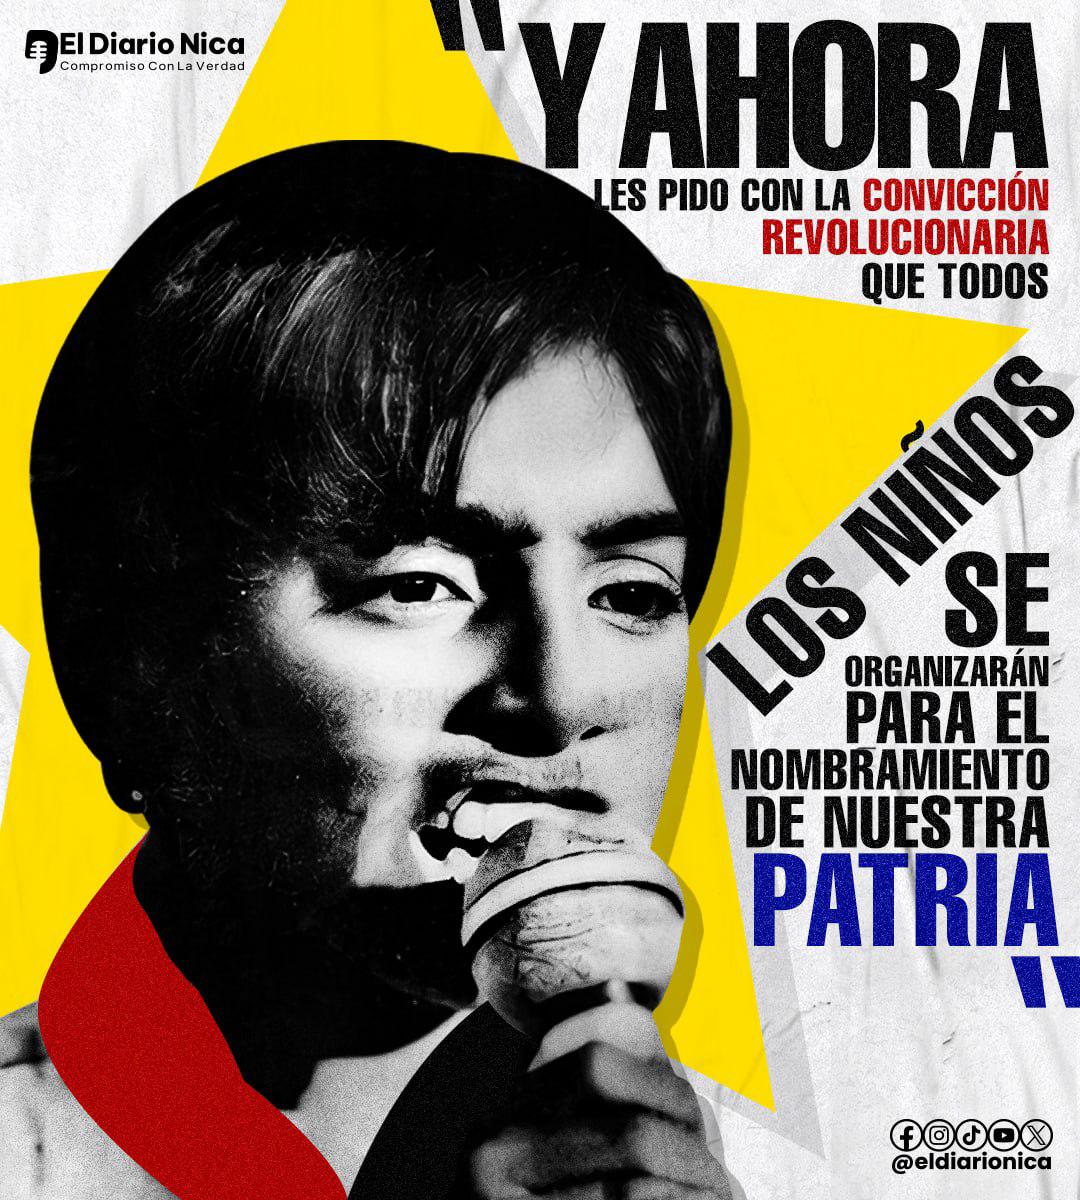 Hoy #02Mayo se conmemora el 45 aniversario del paso a la inmortalidad, del niño héroe Luis Alfonso Velásquez Flores, que nos dejó un inmenso legado revolucionario. #Nicaragua